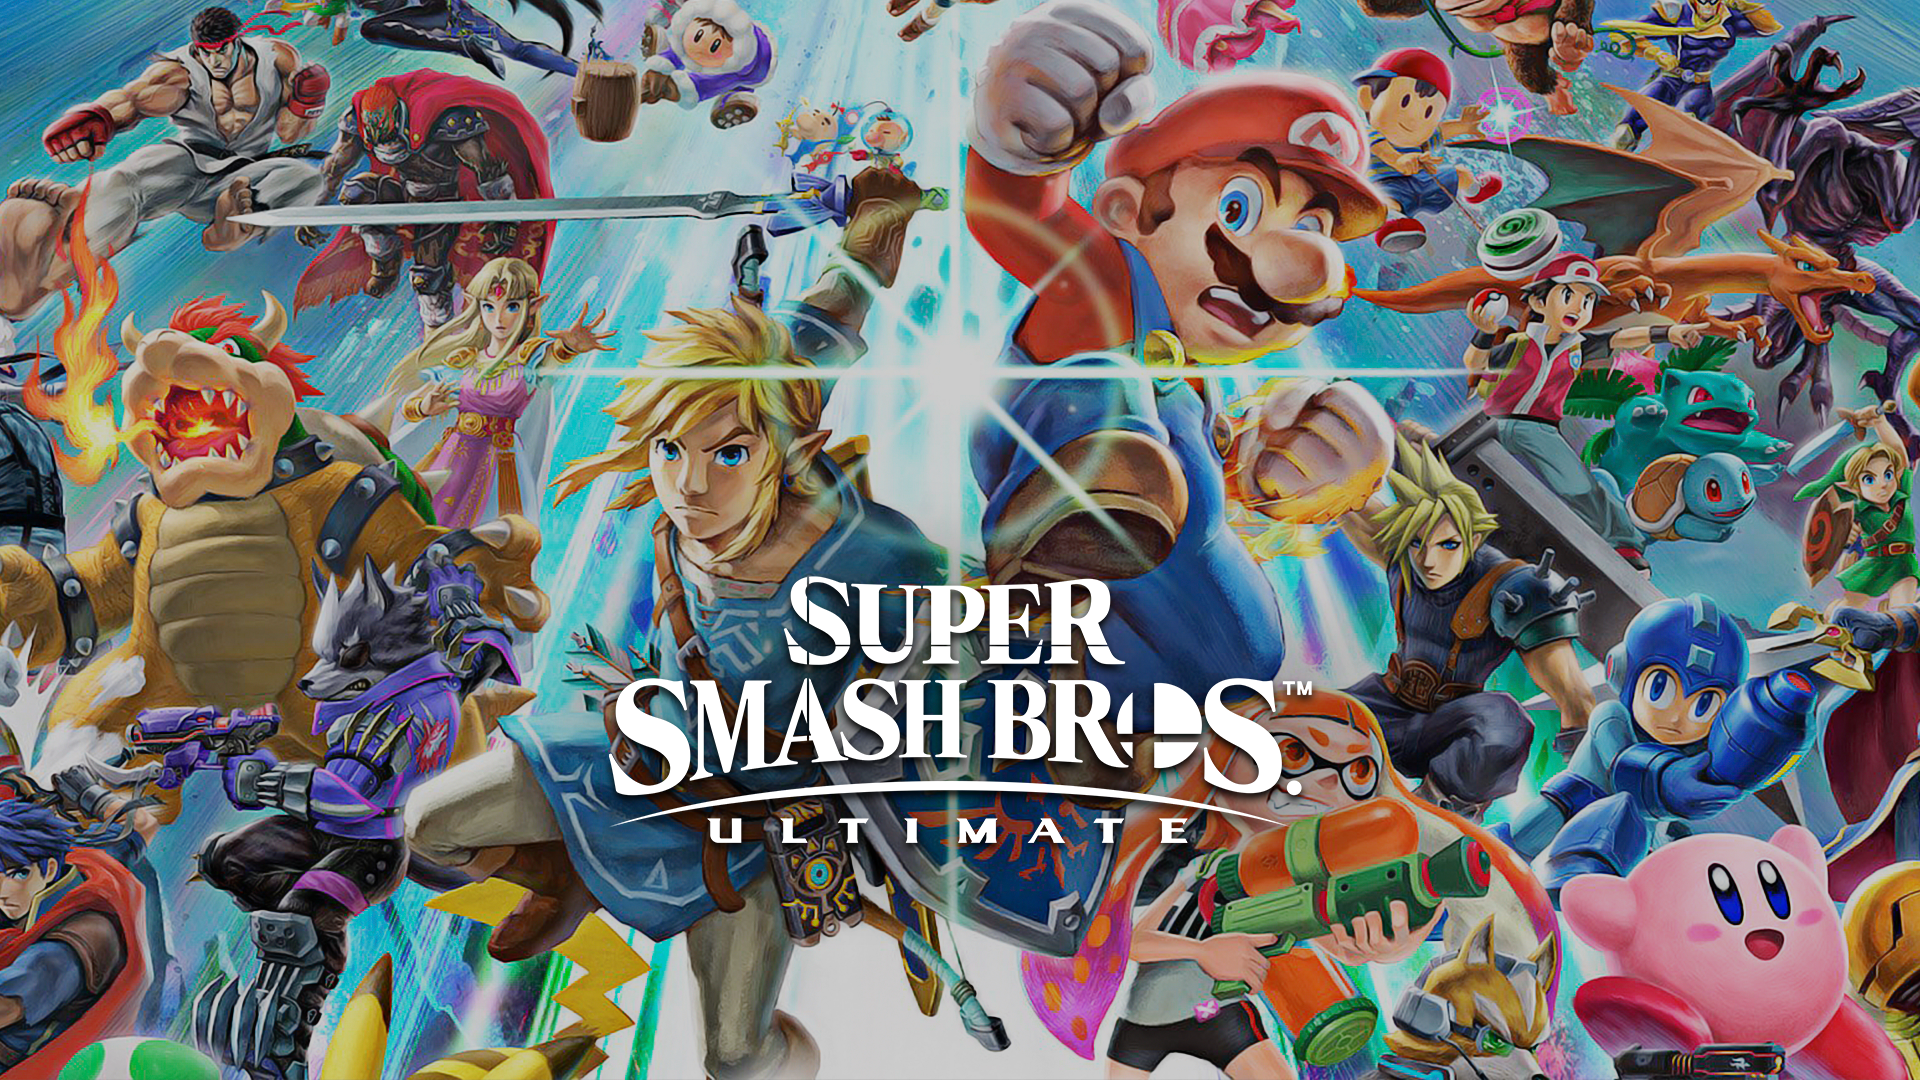 Super Mario Party e Super Smash Bros. Ultimate na BGS 2018 - Nós jogamos!